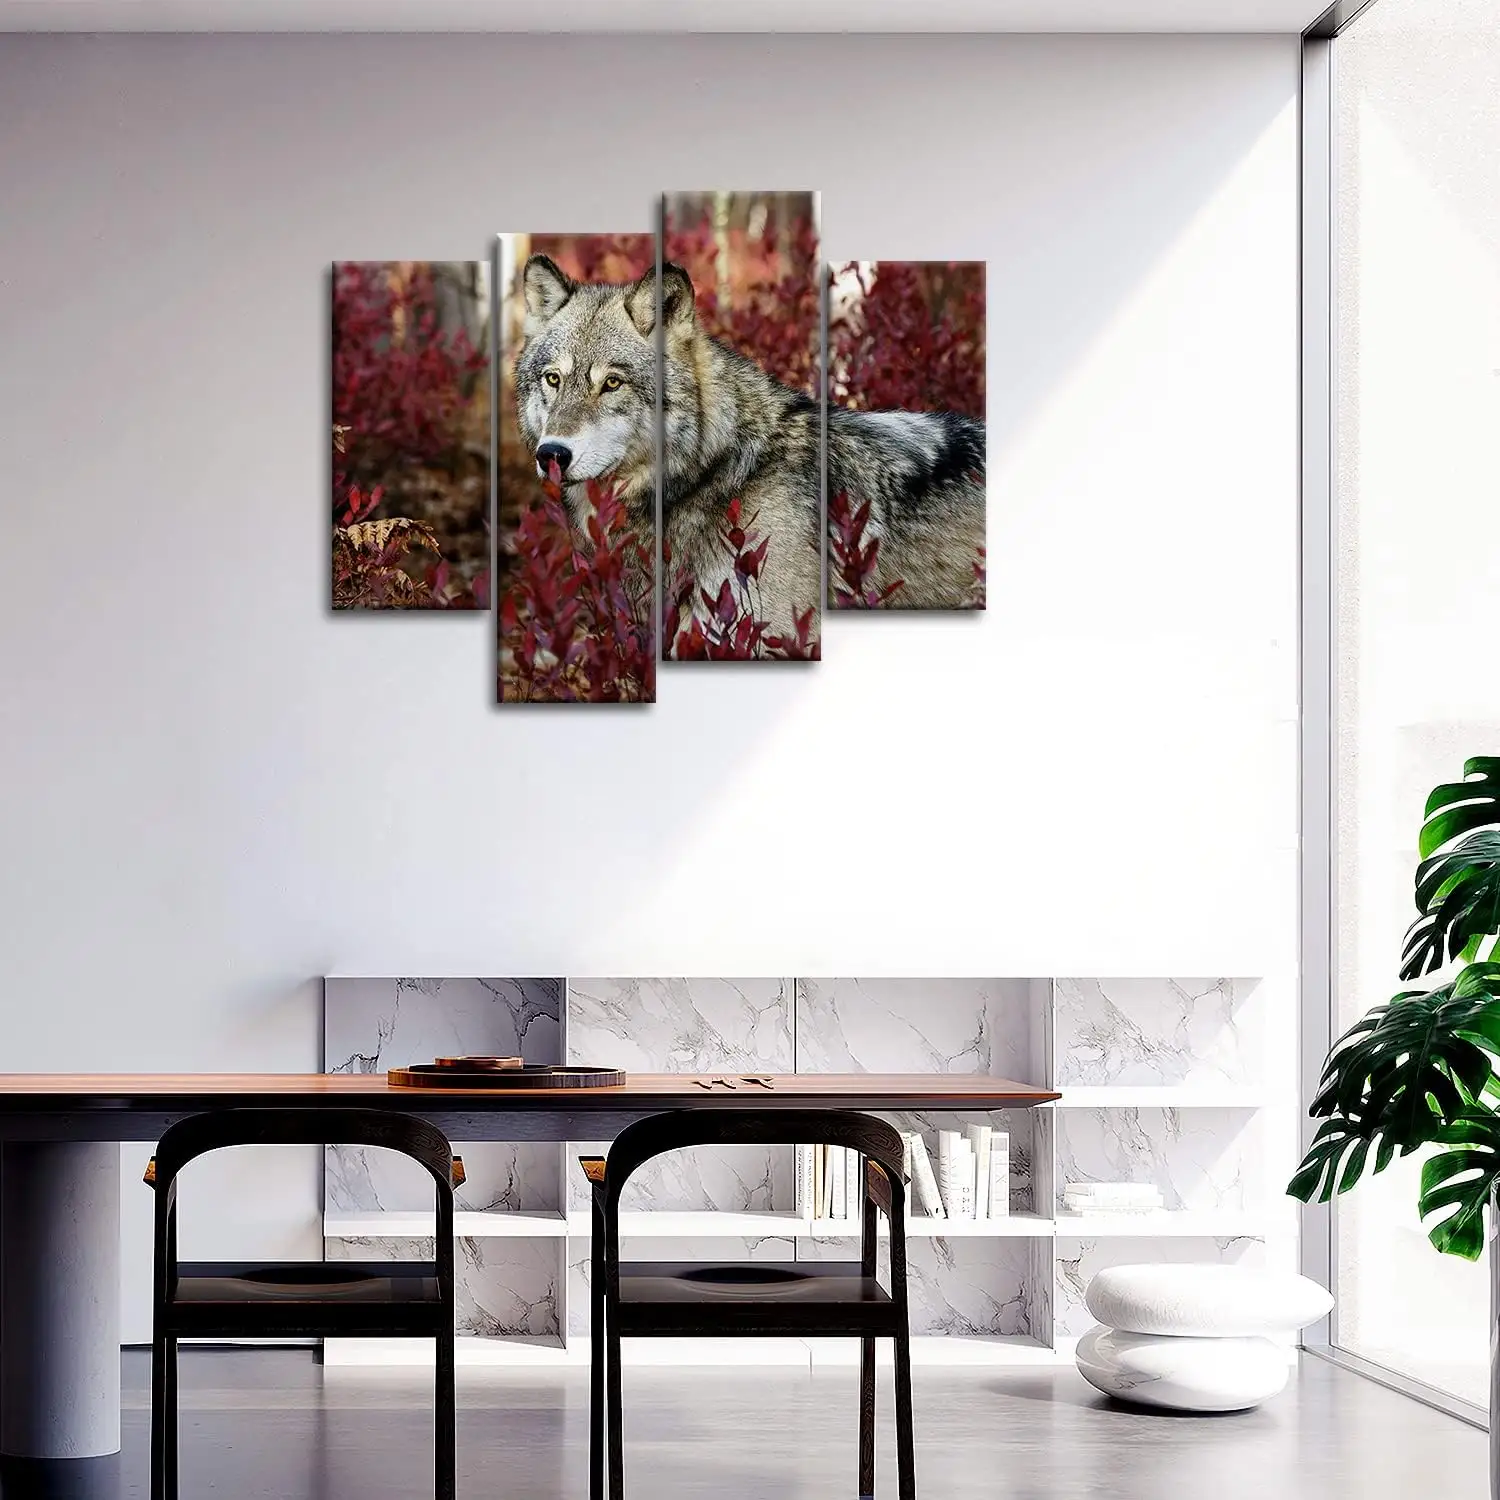 4 piezas de arte de pared pintura lobo en el bosque imágenes impresiones en lienzo Animal la imagen decoración al óleo para la decoración moderna del hogar